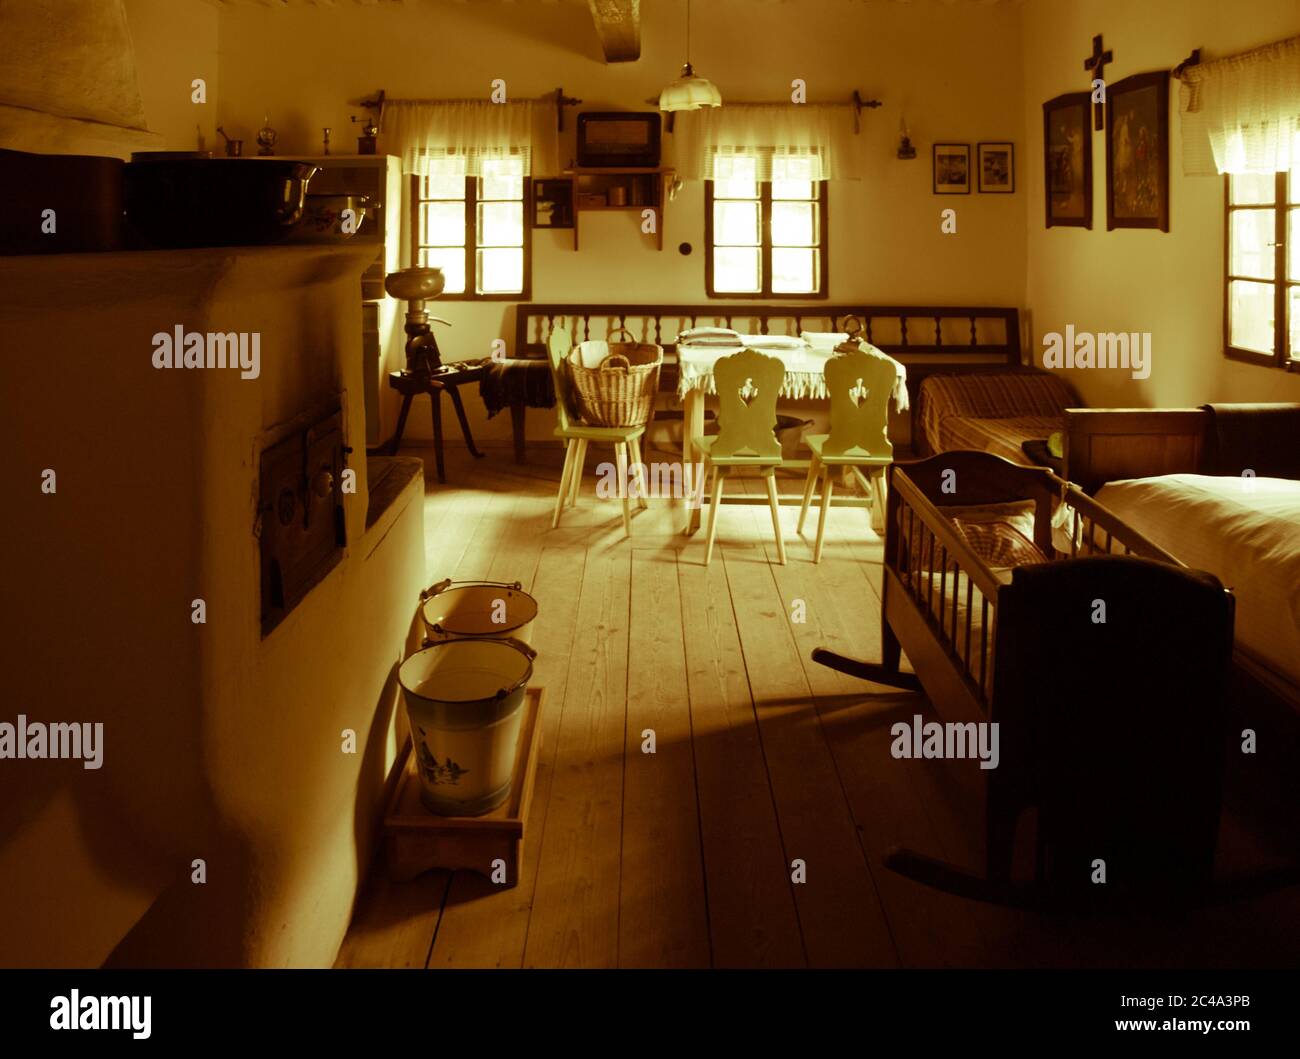 Chambre vintage avec lit, berceau, four, table et chaises dans la maison rurale ancienne. Image de style sépia. Banque D'Images